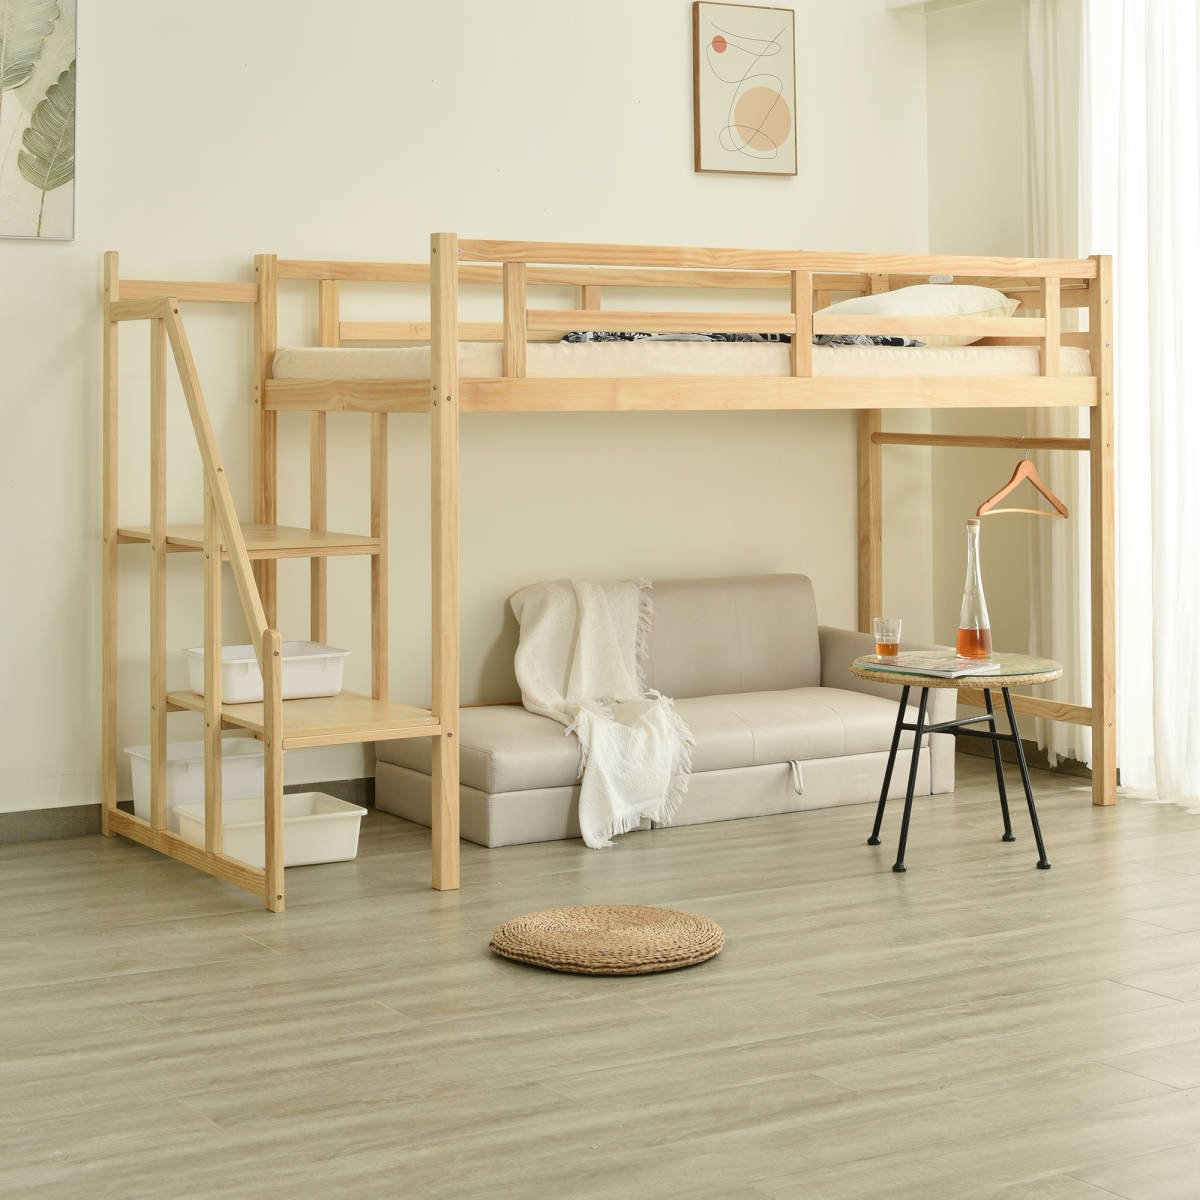 ロフトベッド シングル 階段付き 天然木 コンセント付き ロータイプ システムベッド ハイベッド 宮付き 木製ベッド子供ベッド ベッド 